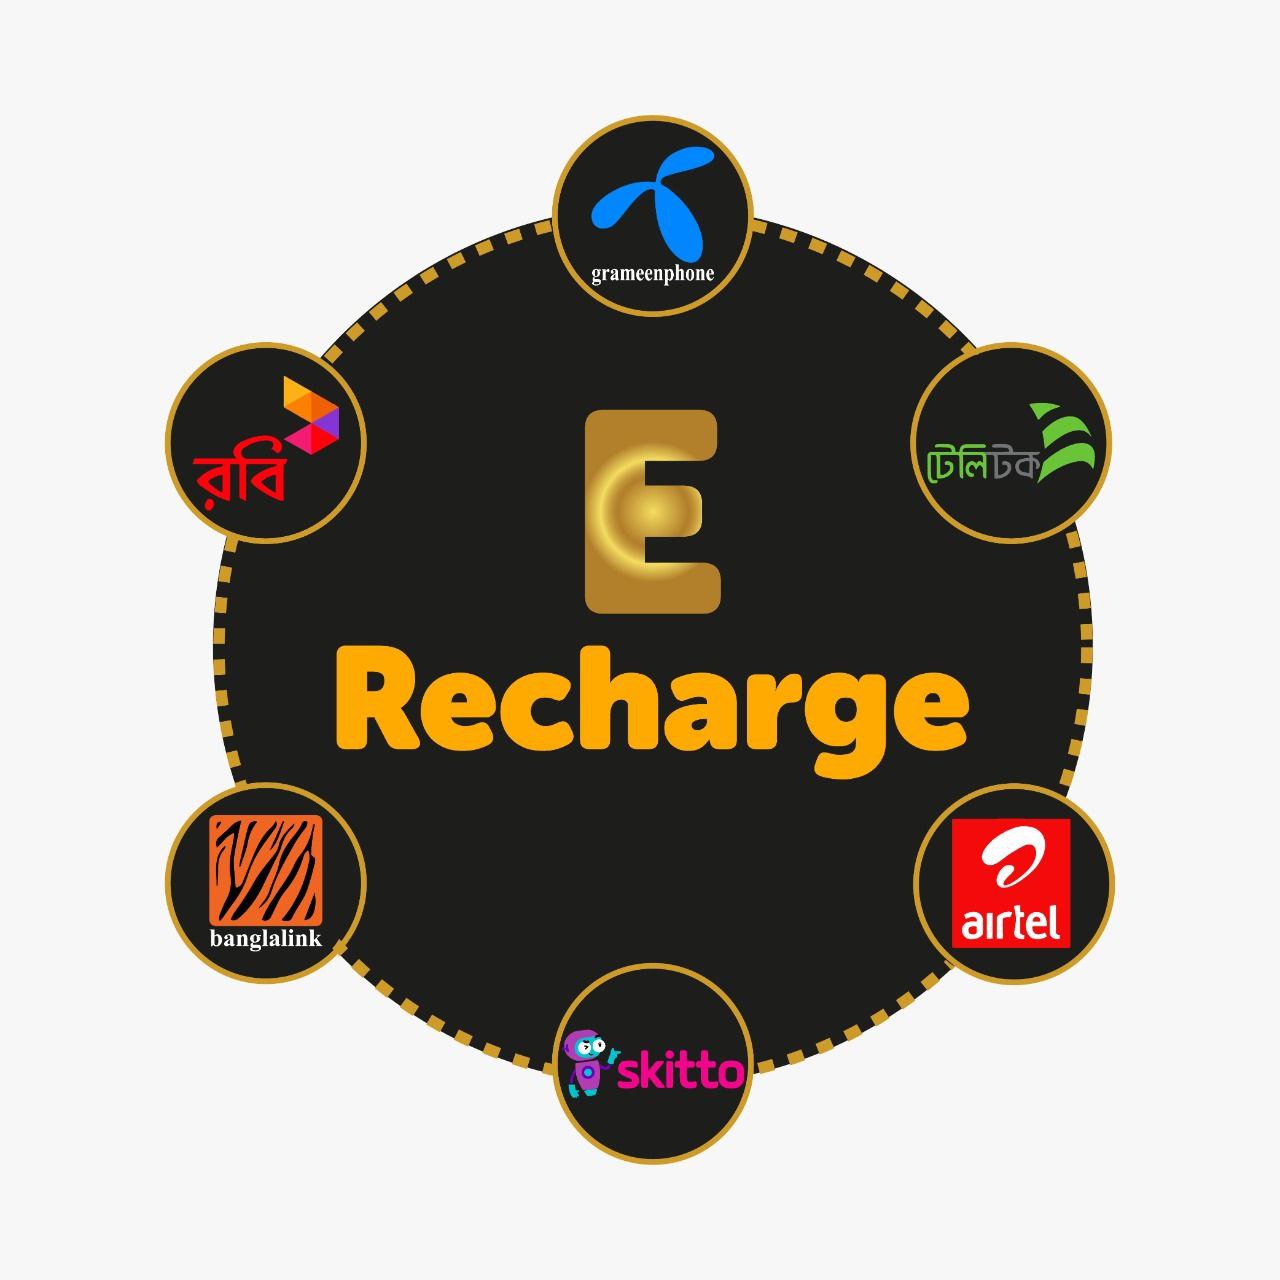 E-Recharge